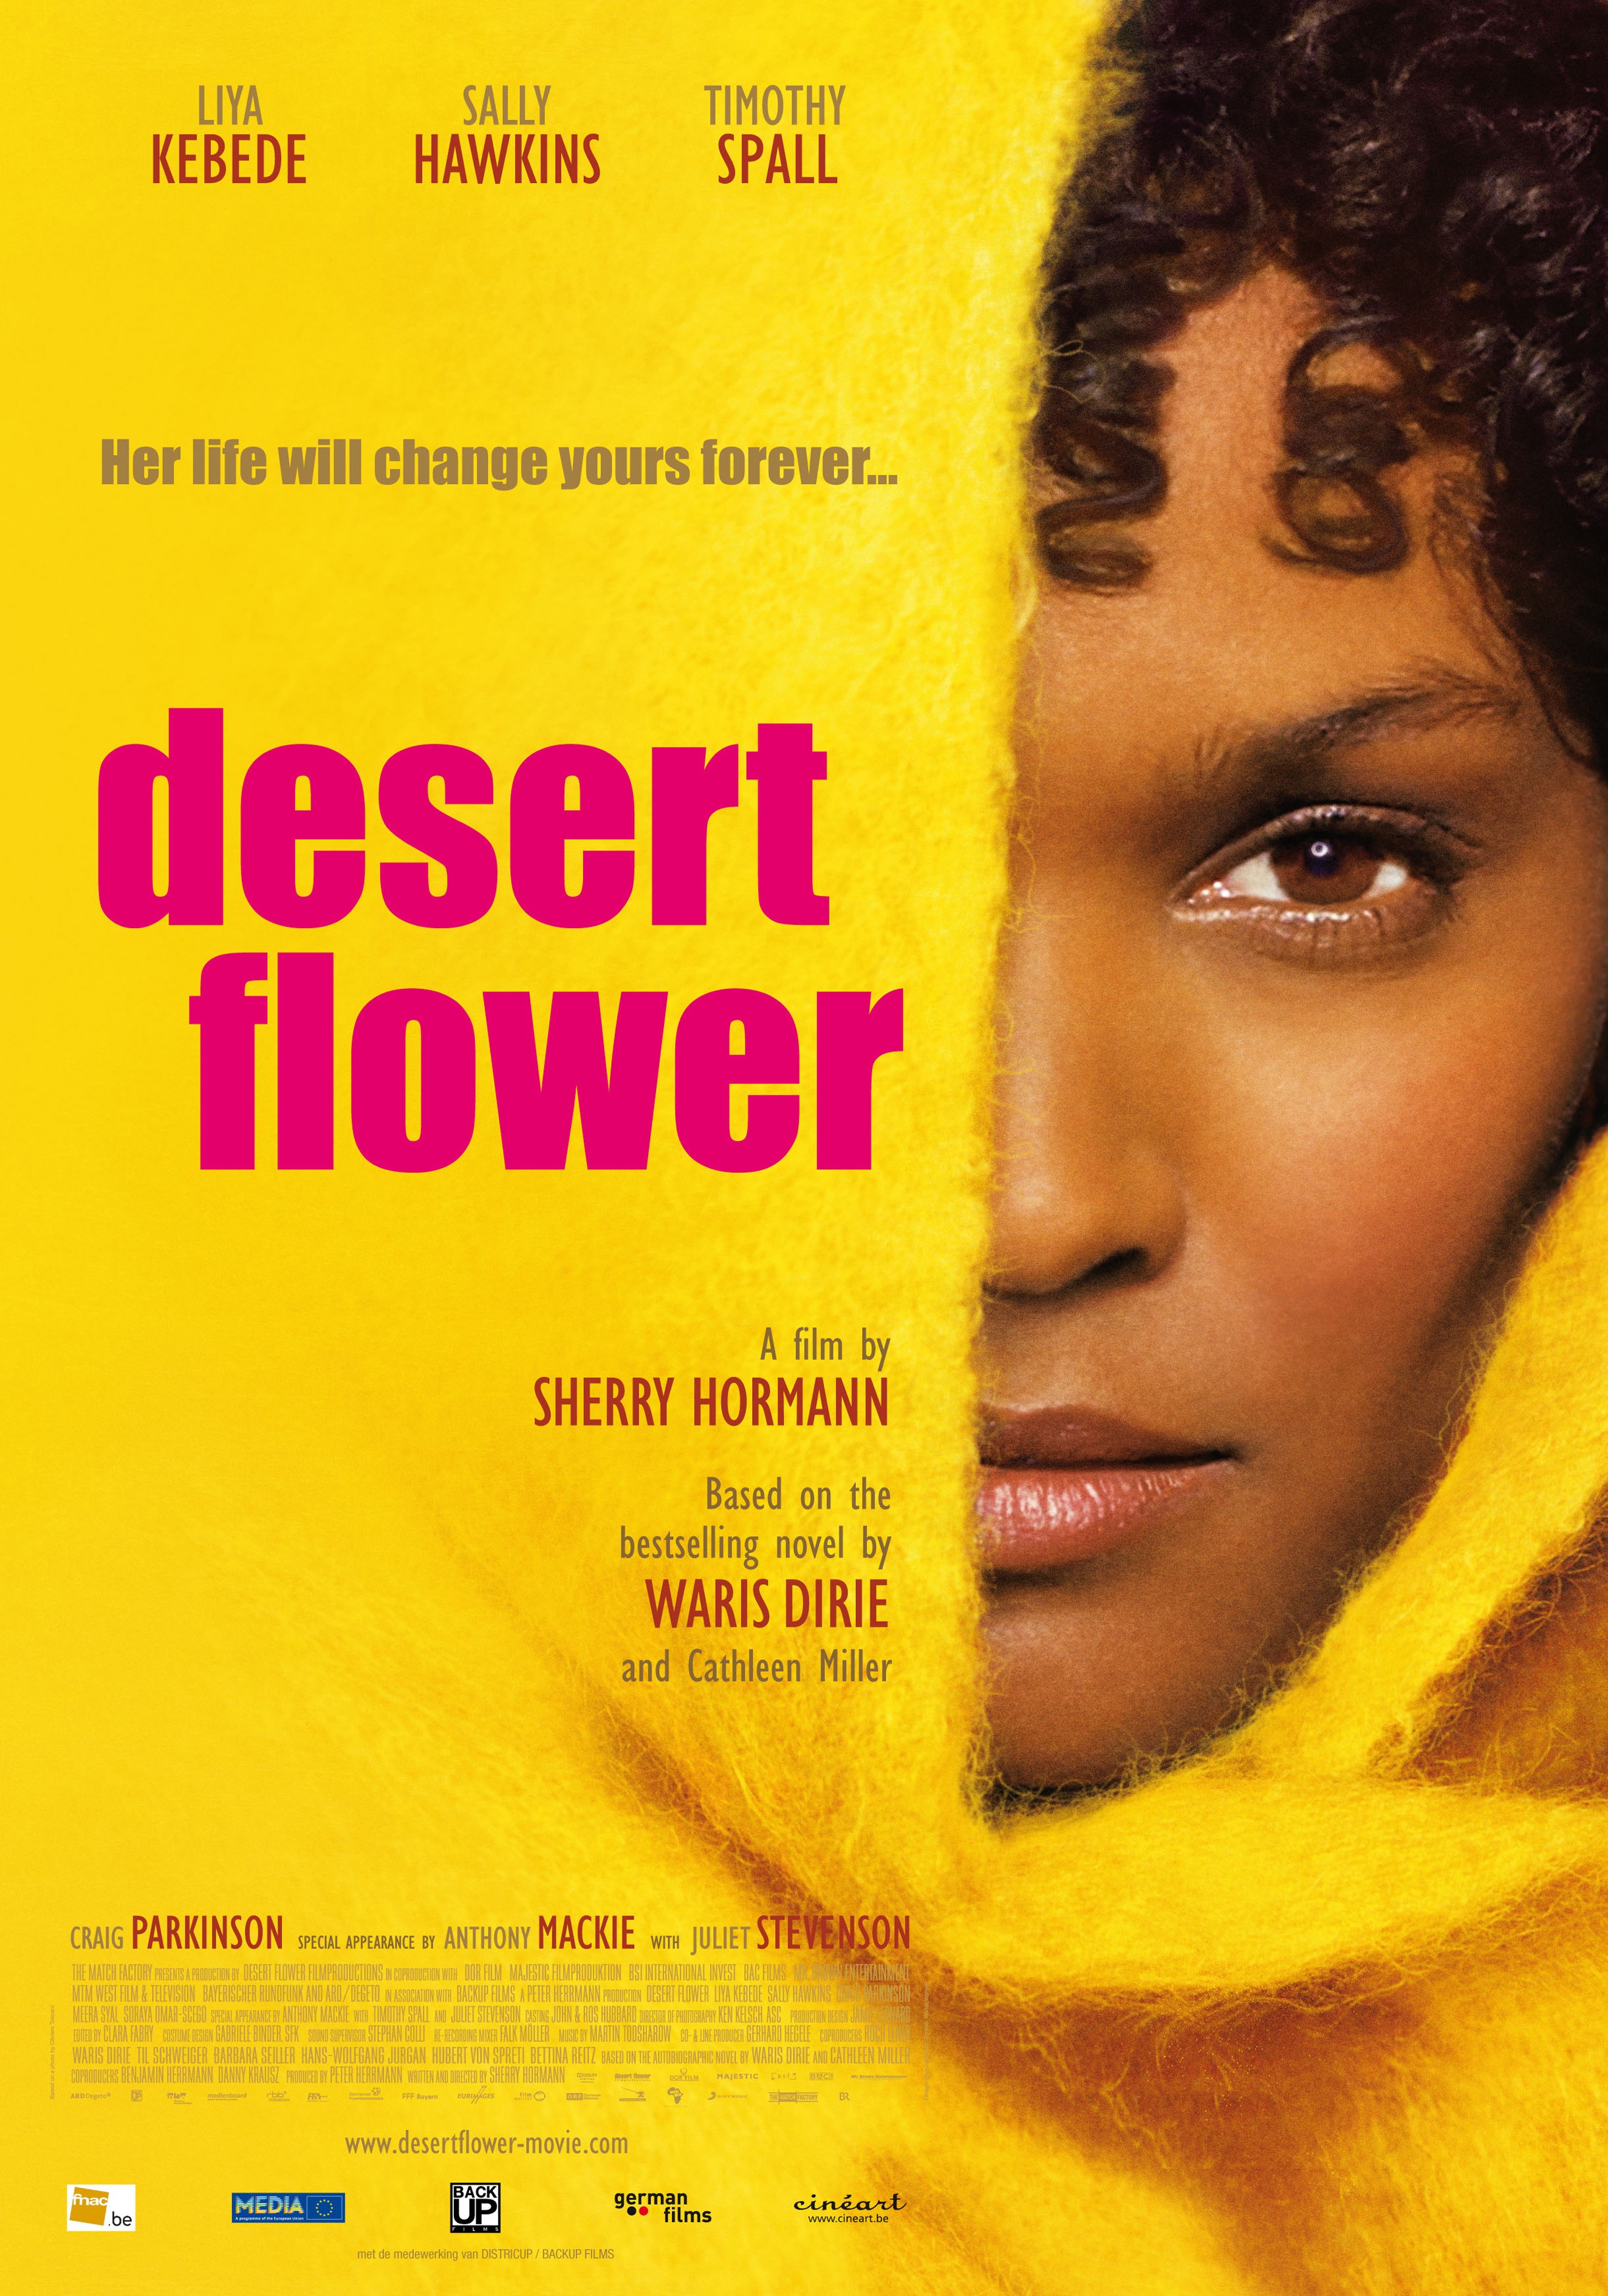 Locandina del film Fiore del deserto di Sherry Hormann 2010 Somalia